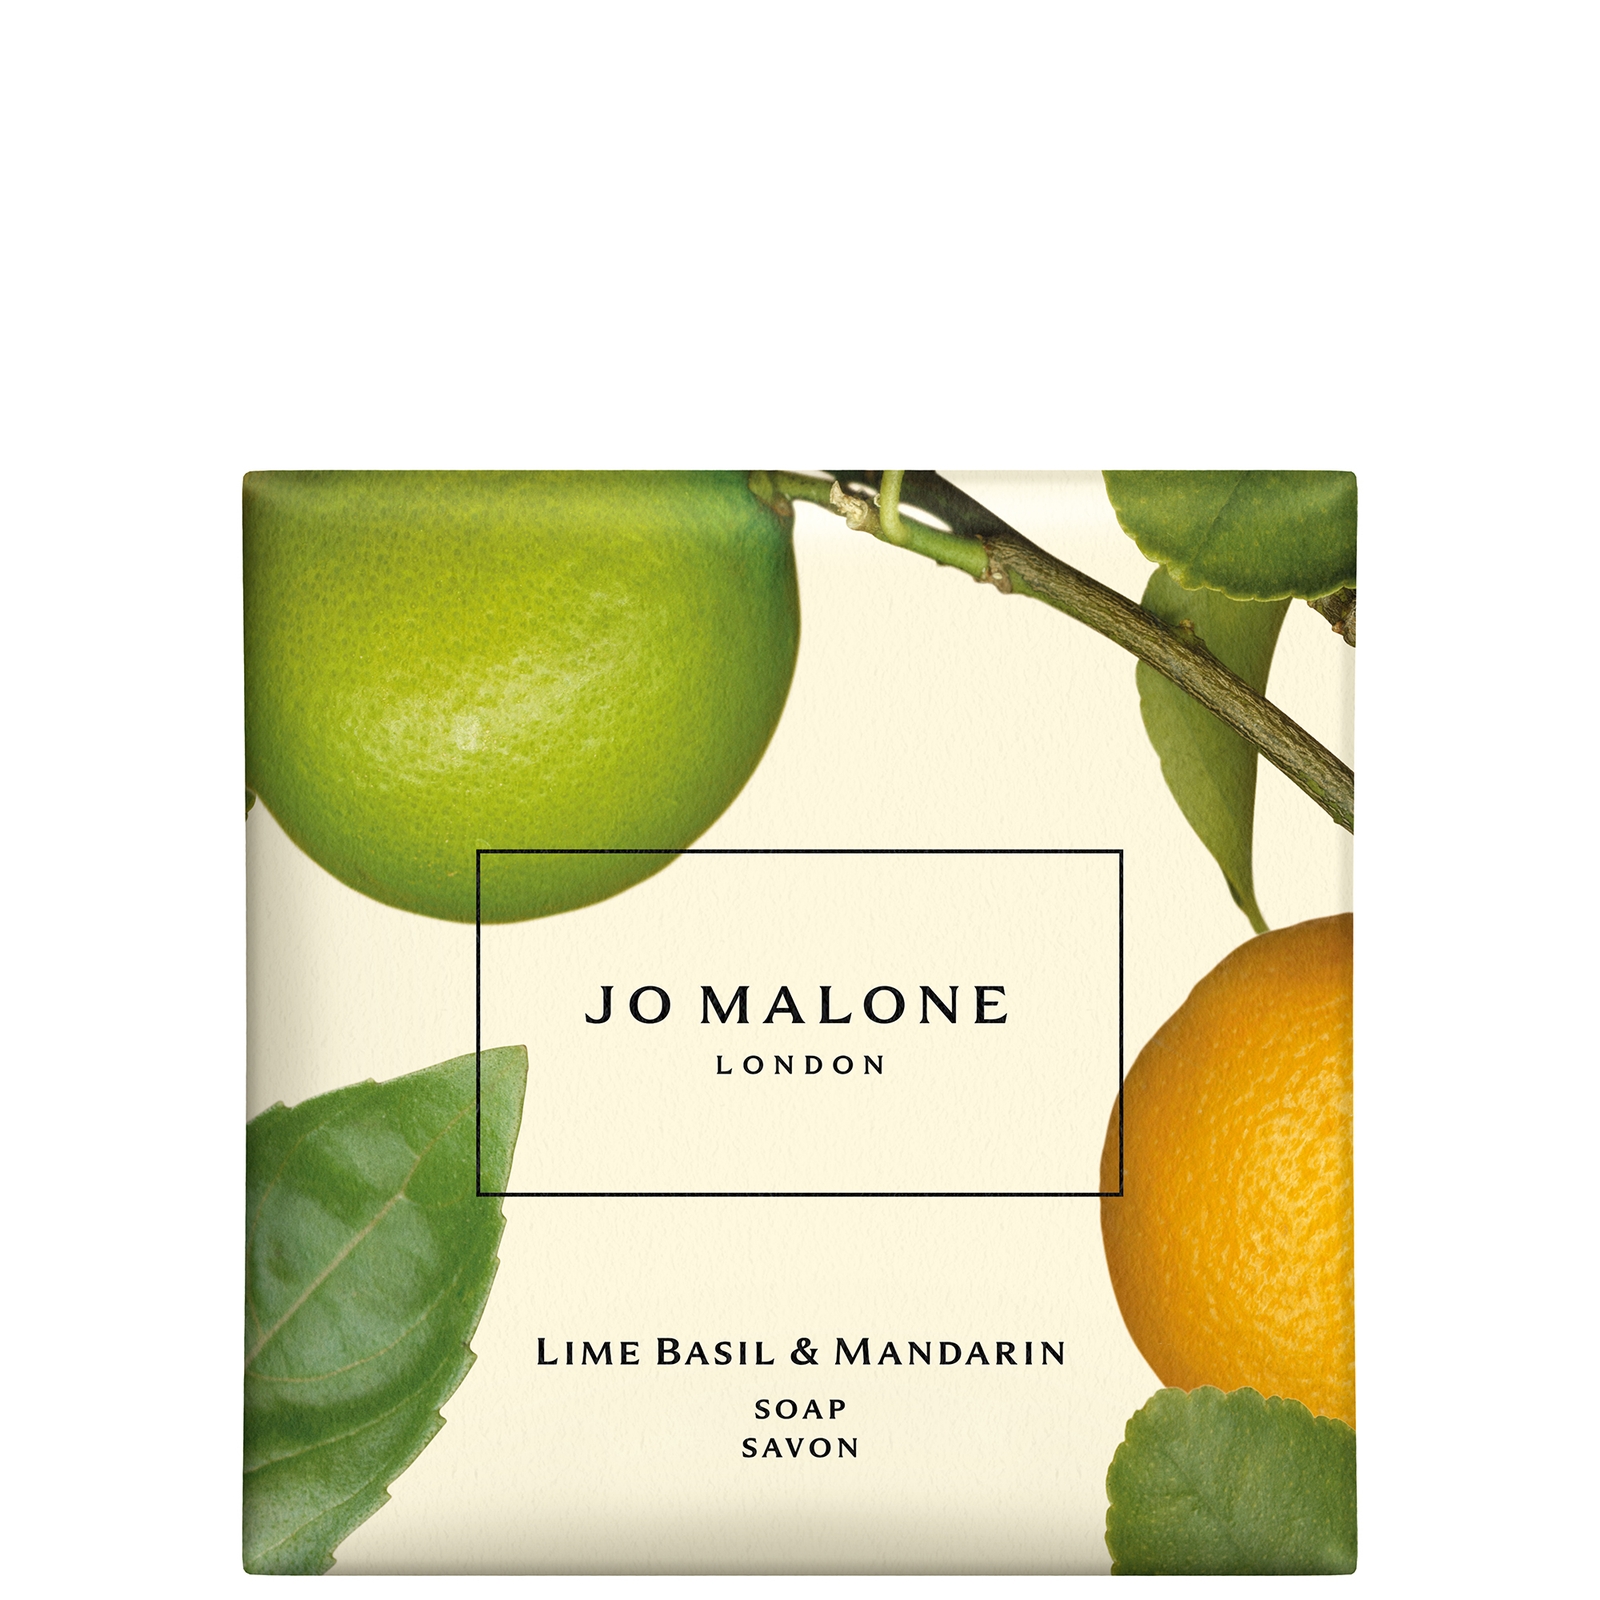 Photos - Soap / Hand Sanitiser Jo Malone London Lime Basil & Mandarin Soap 100g